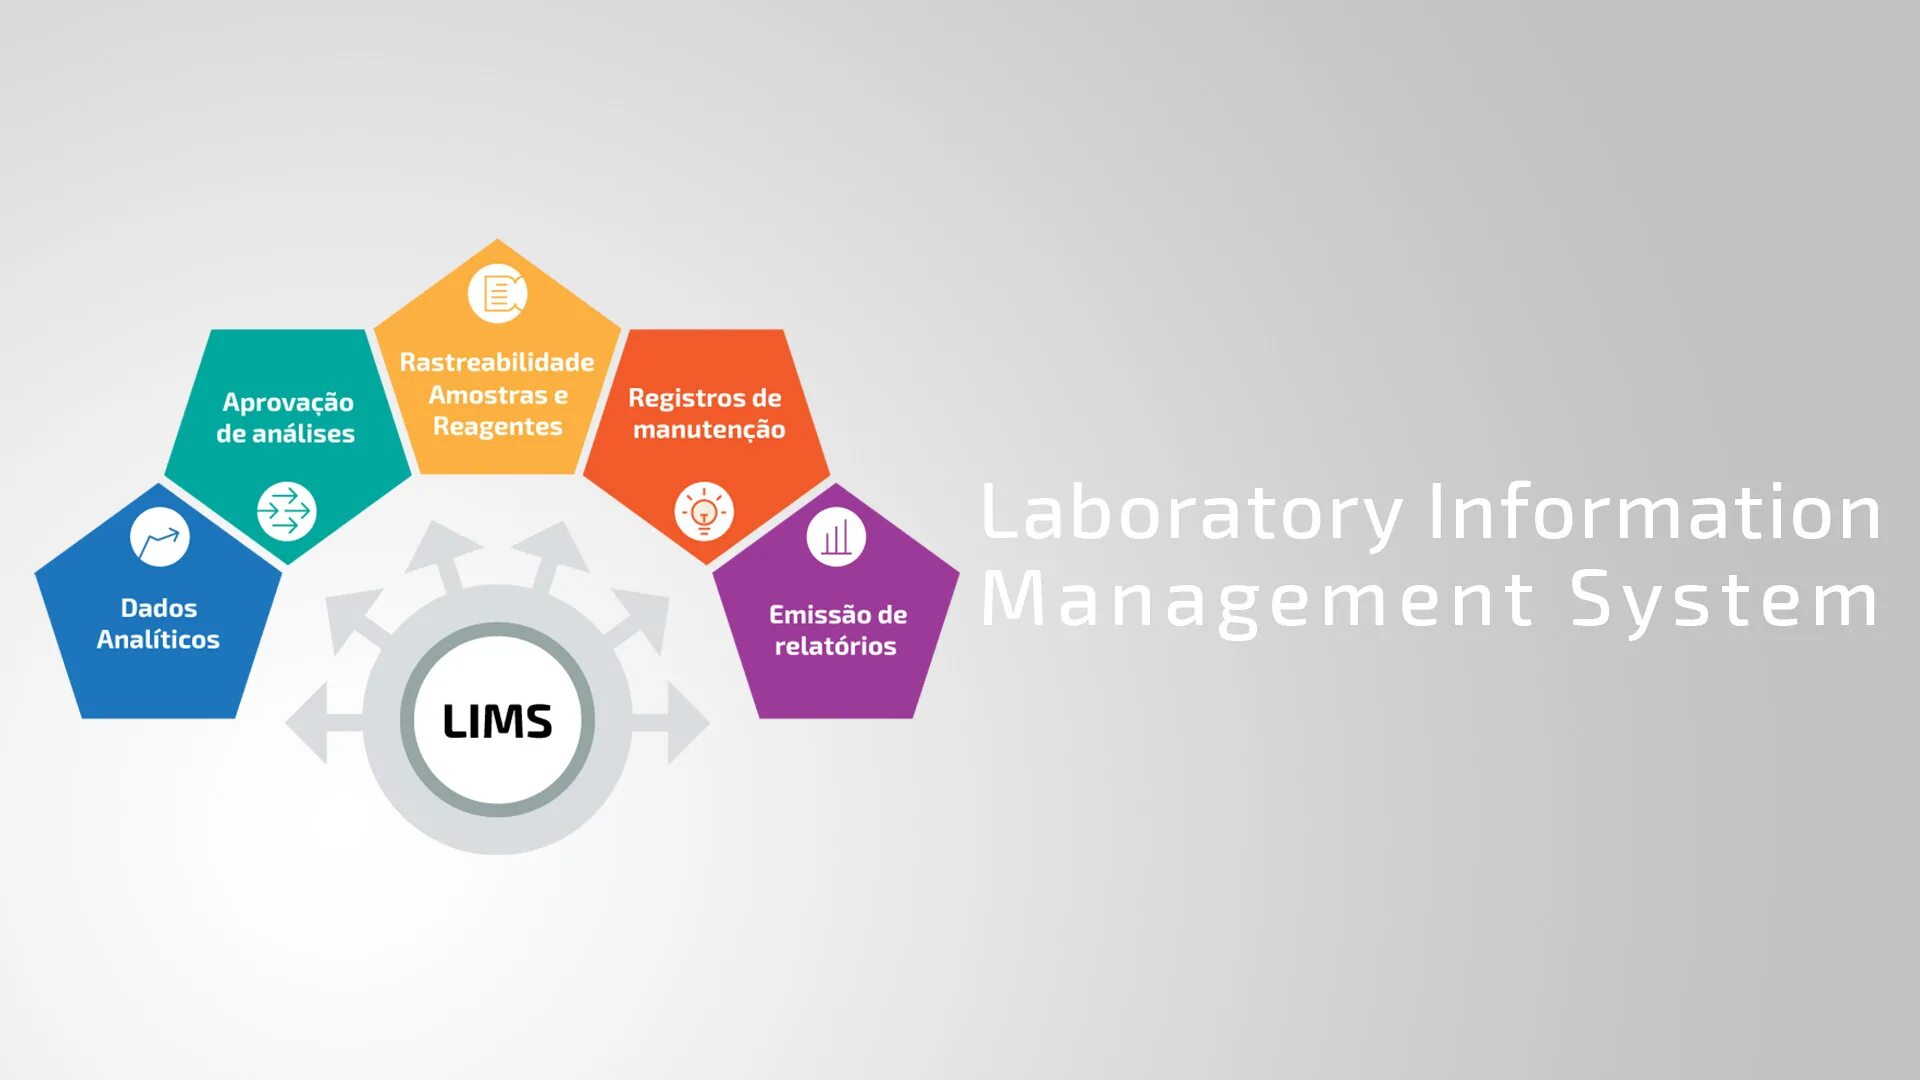 Ис 2019. Lims система. Laboratory information Management System. ЛИМС система управления лабораторной информацией. Лабораторная информационная менеджмент система (Lims, Лис).